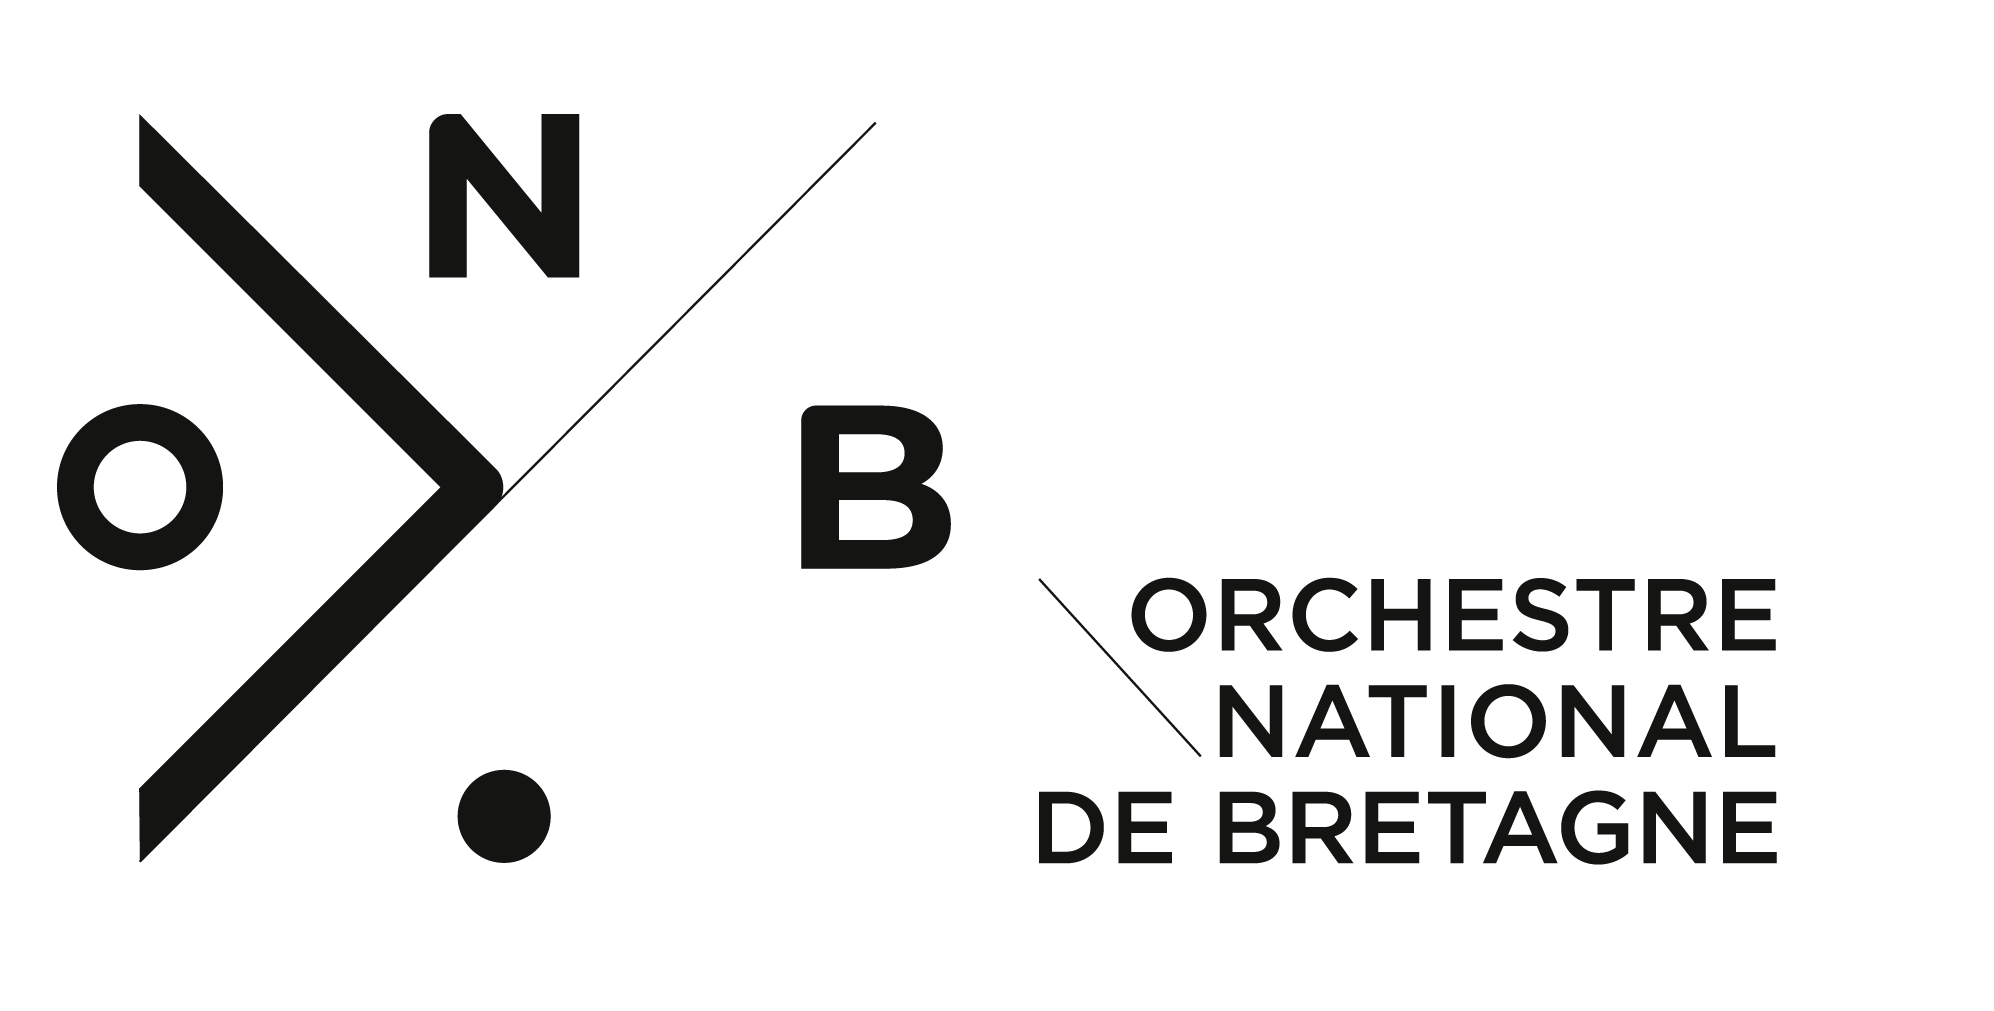 logo ochestre national de bretagne